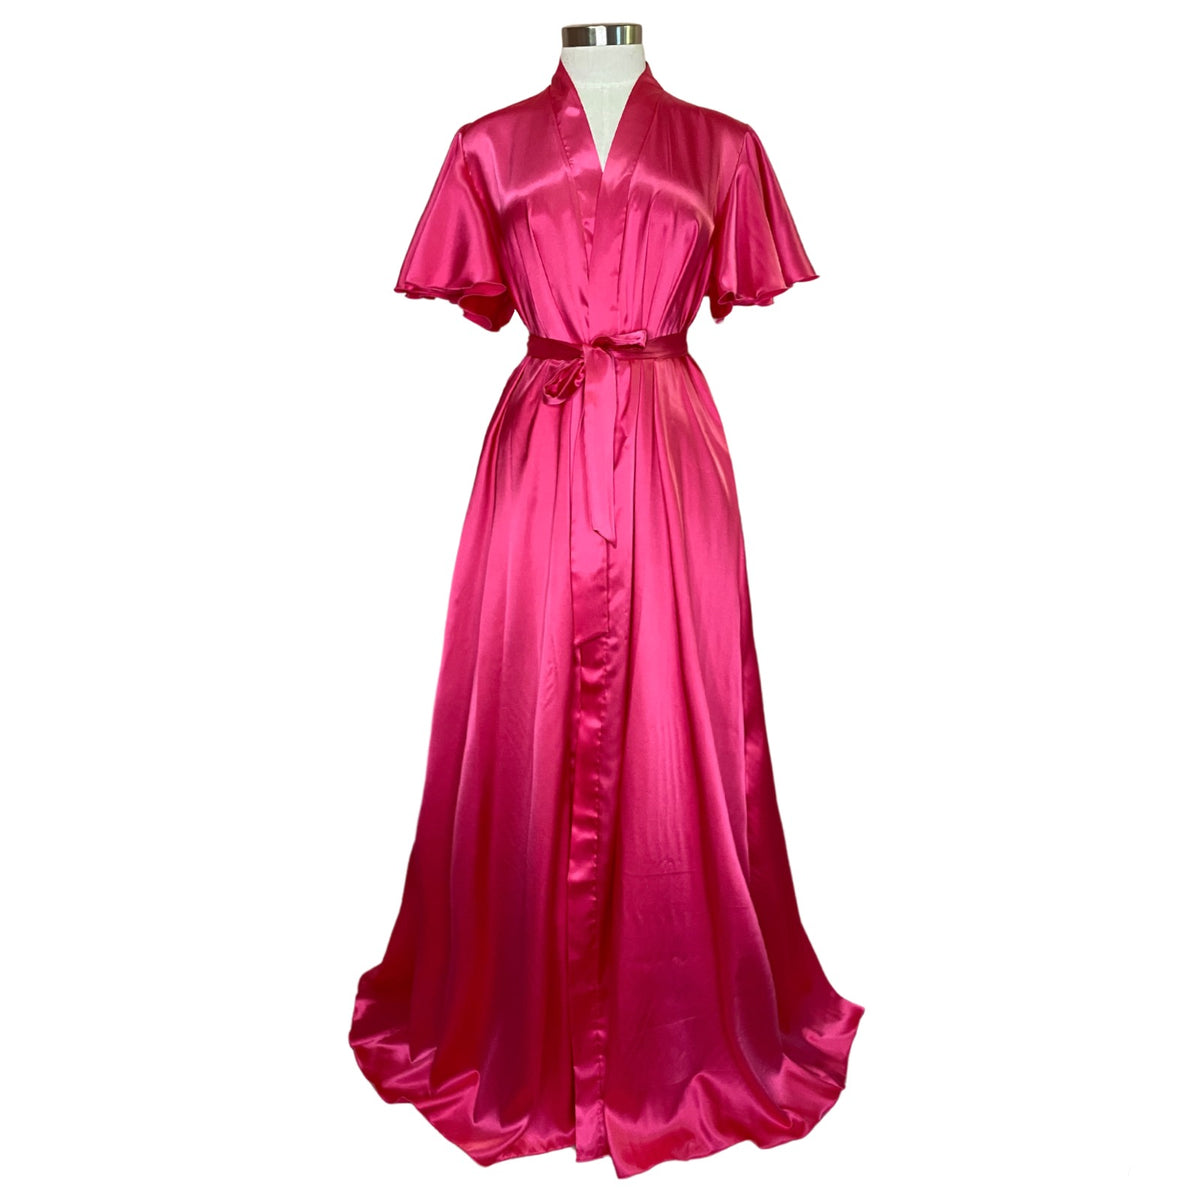 Hera Robe - Hot Pink